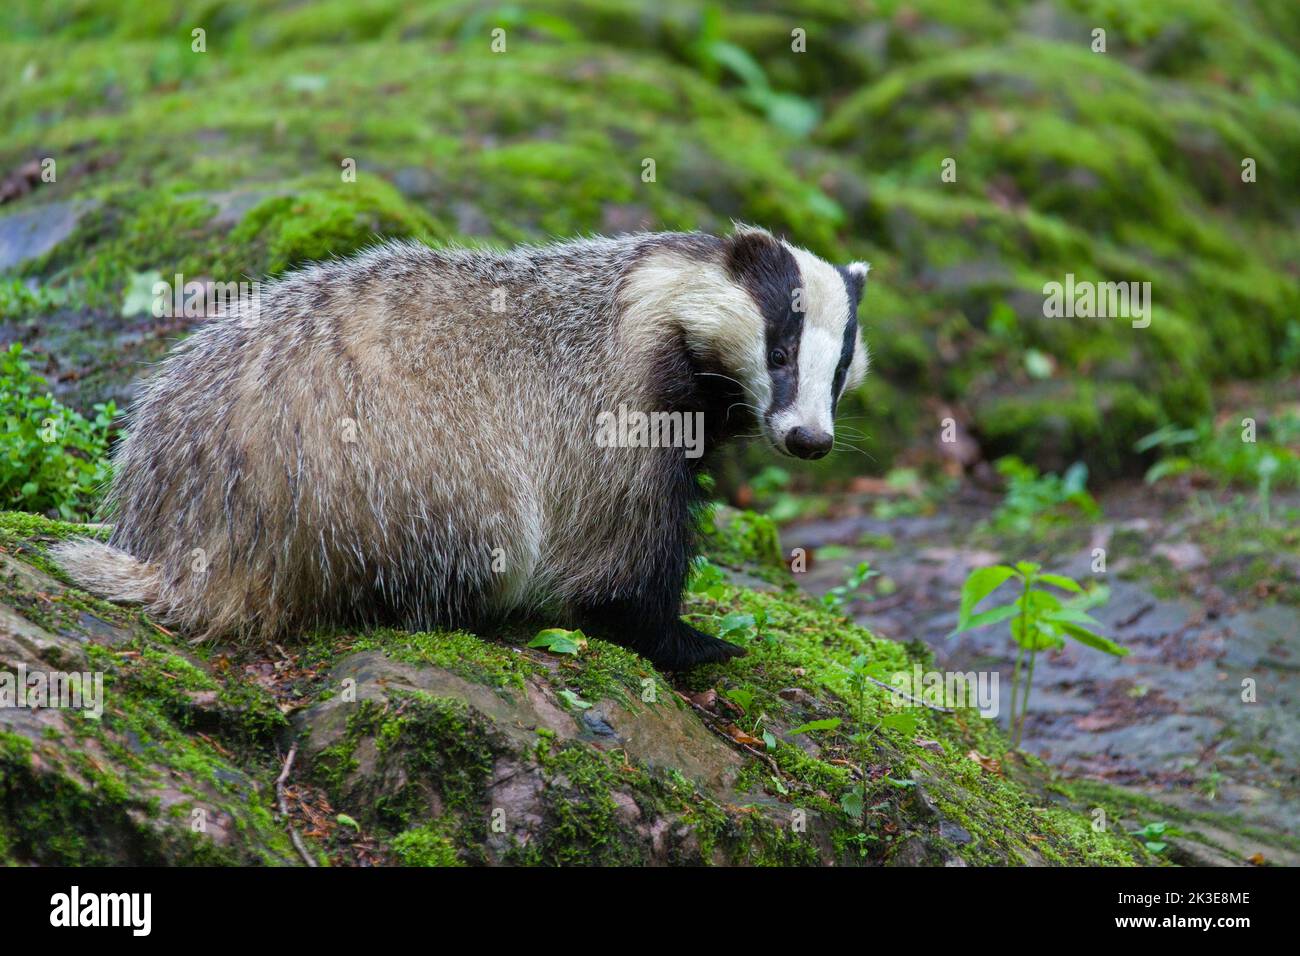 European badger (Meles meles) foraging among rocks in forest Stock Photo